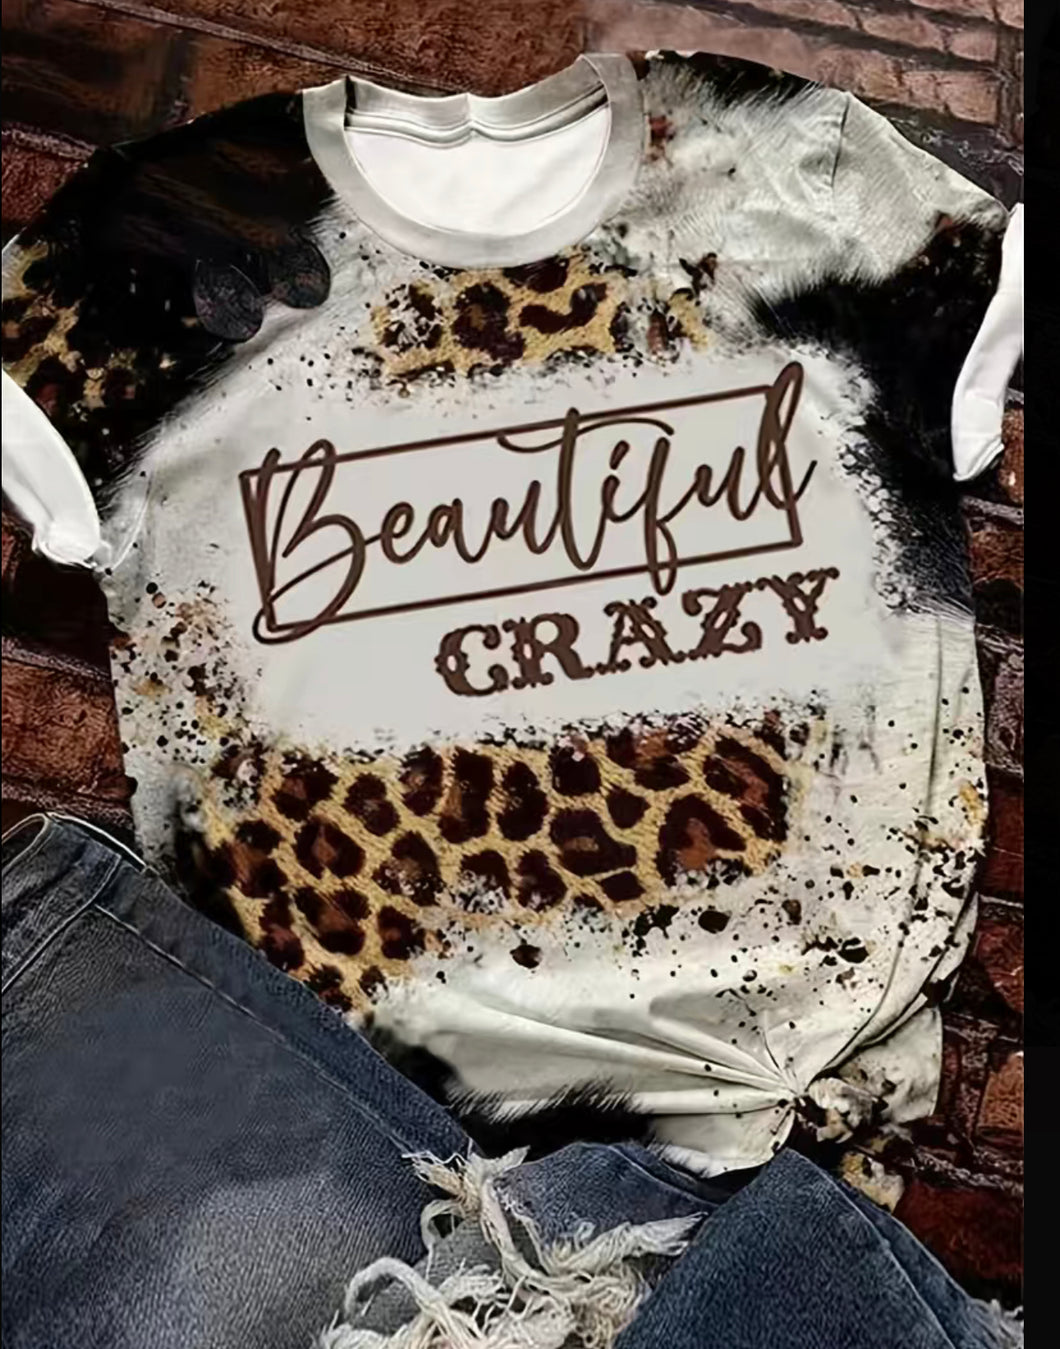 Beautiful Crazy Women’s T-shirt